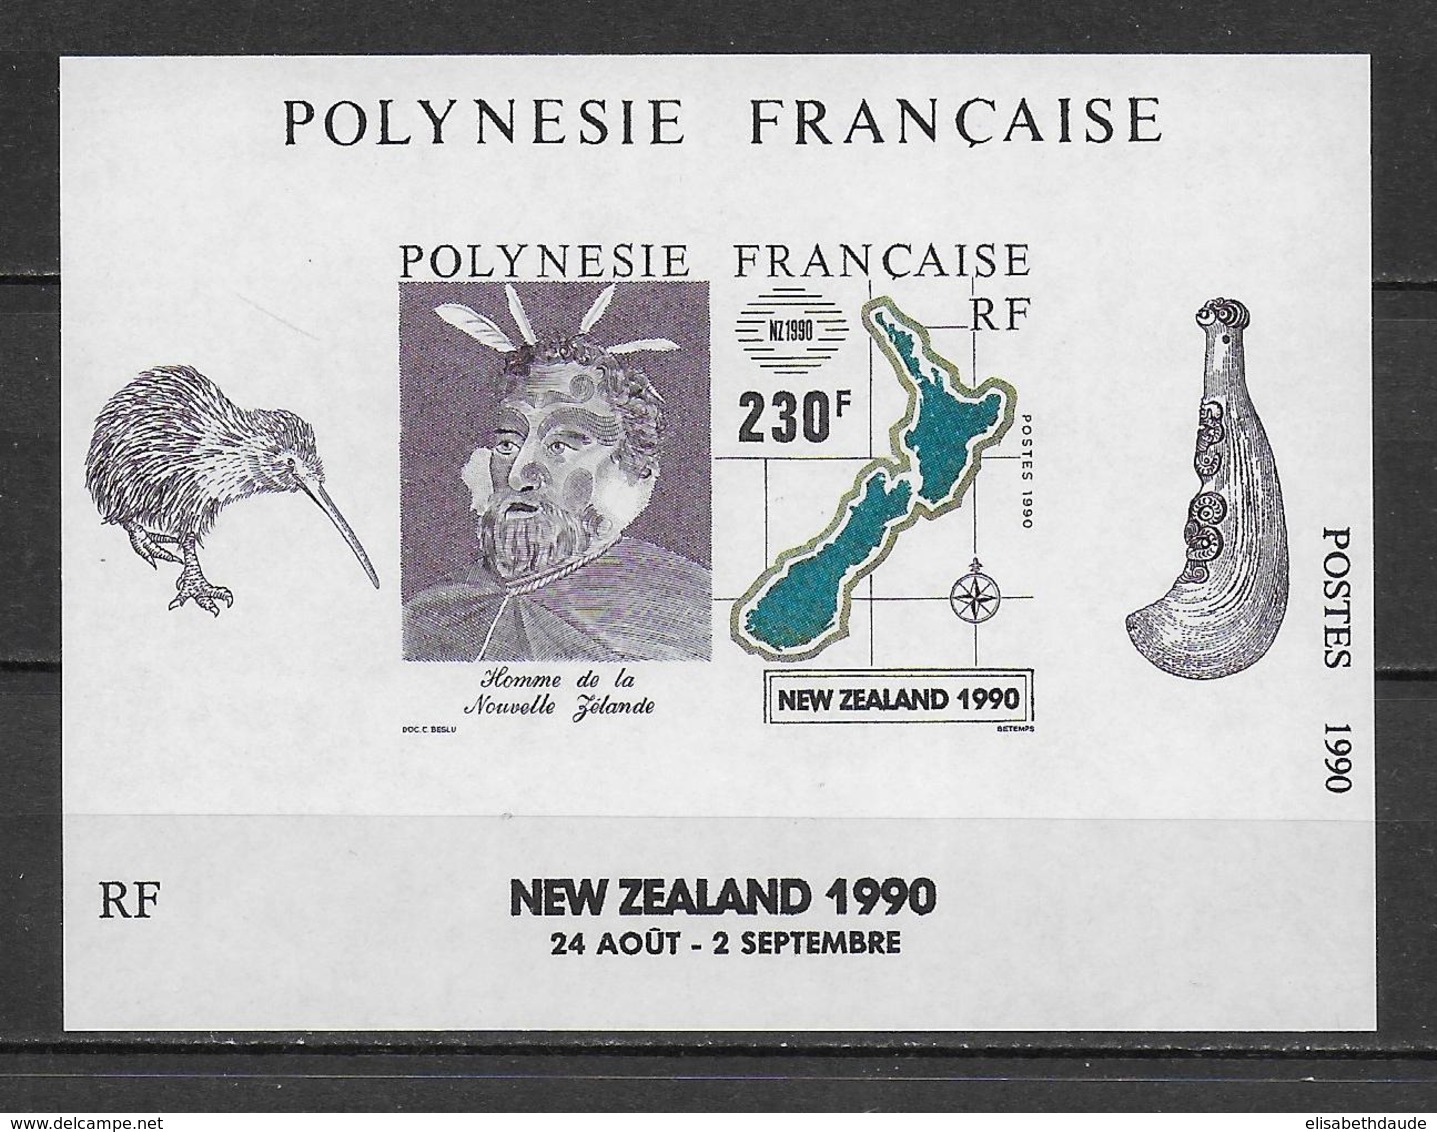 POLYNESIE - 1990 - PORT GRATUIT A PARTIR DE 5 EUR D'ACHAT - BLOC YVERT N° 17 ** MNH - Blocs-feuillets